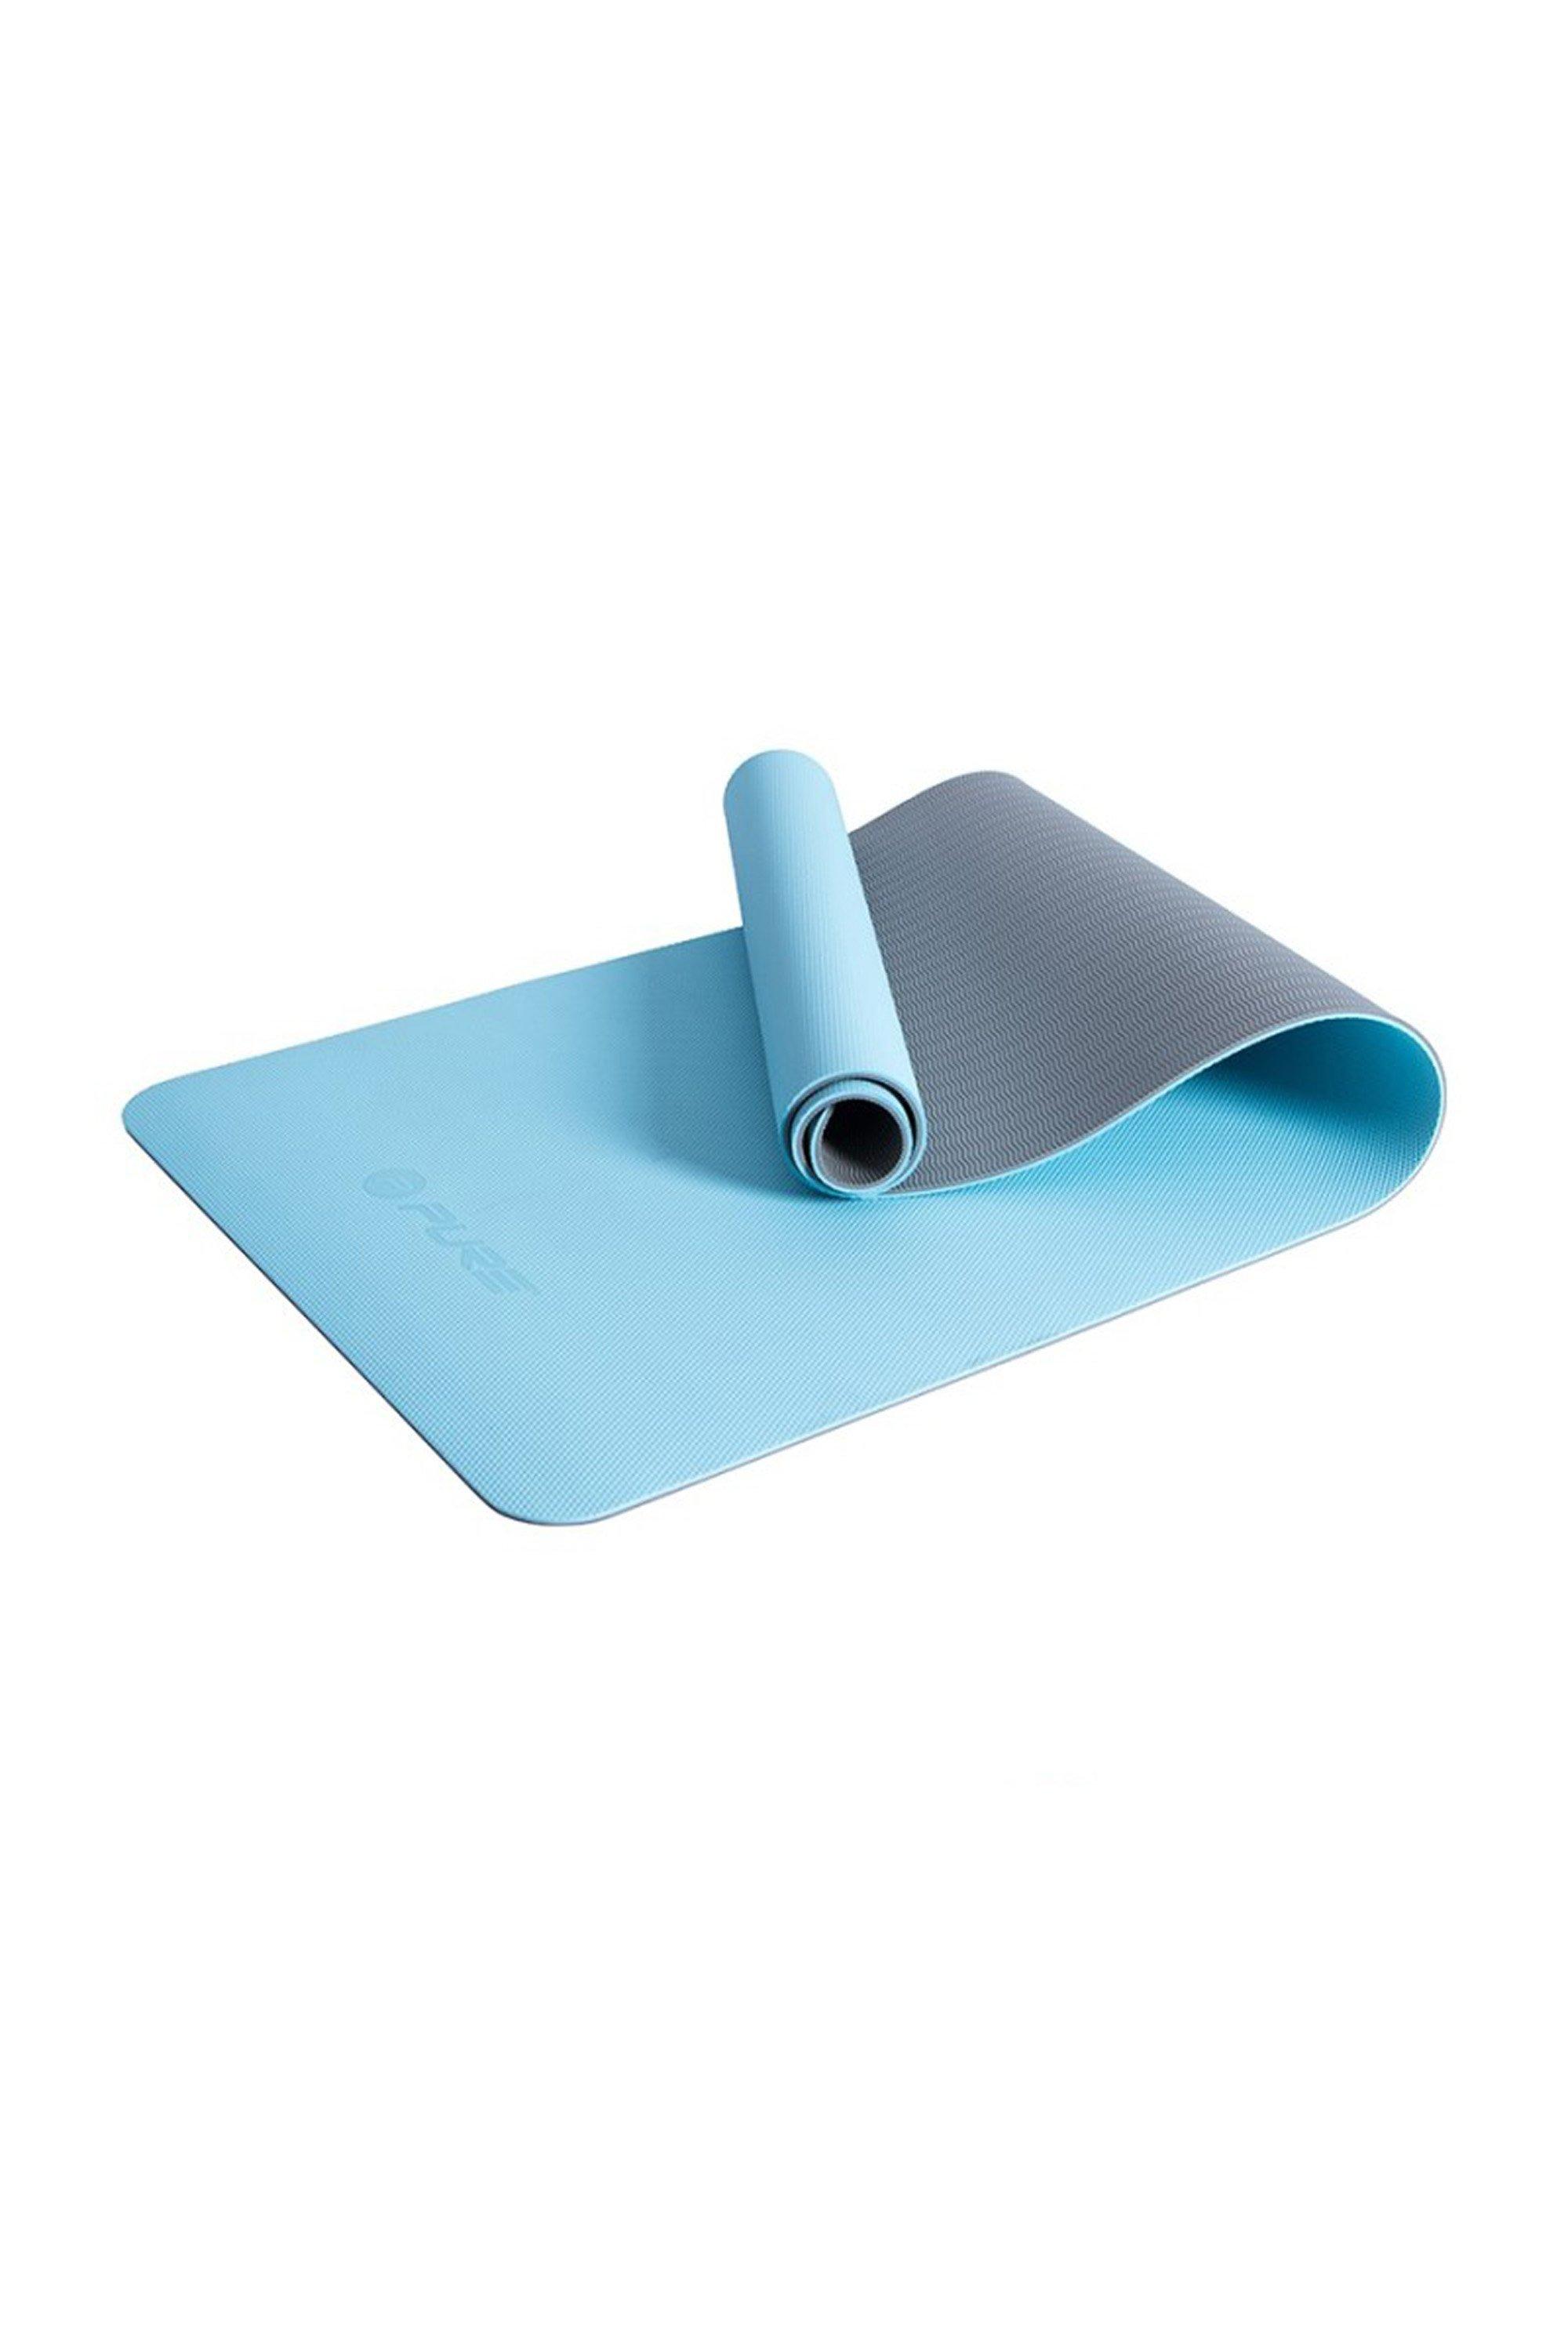 Pure2Improve Yoga Mat - Blue/Grey|